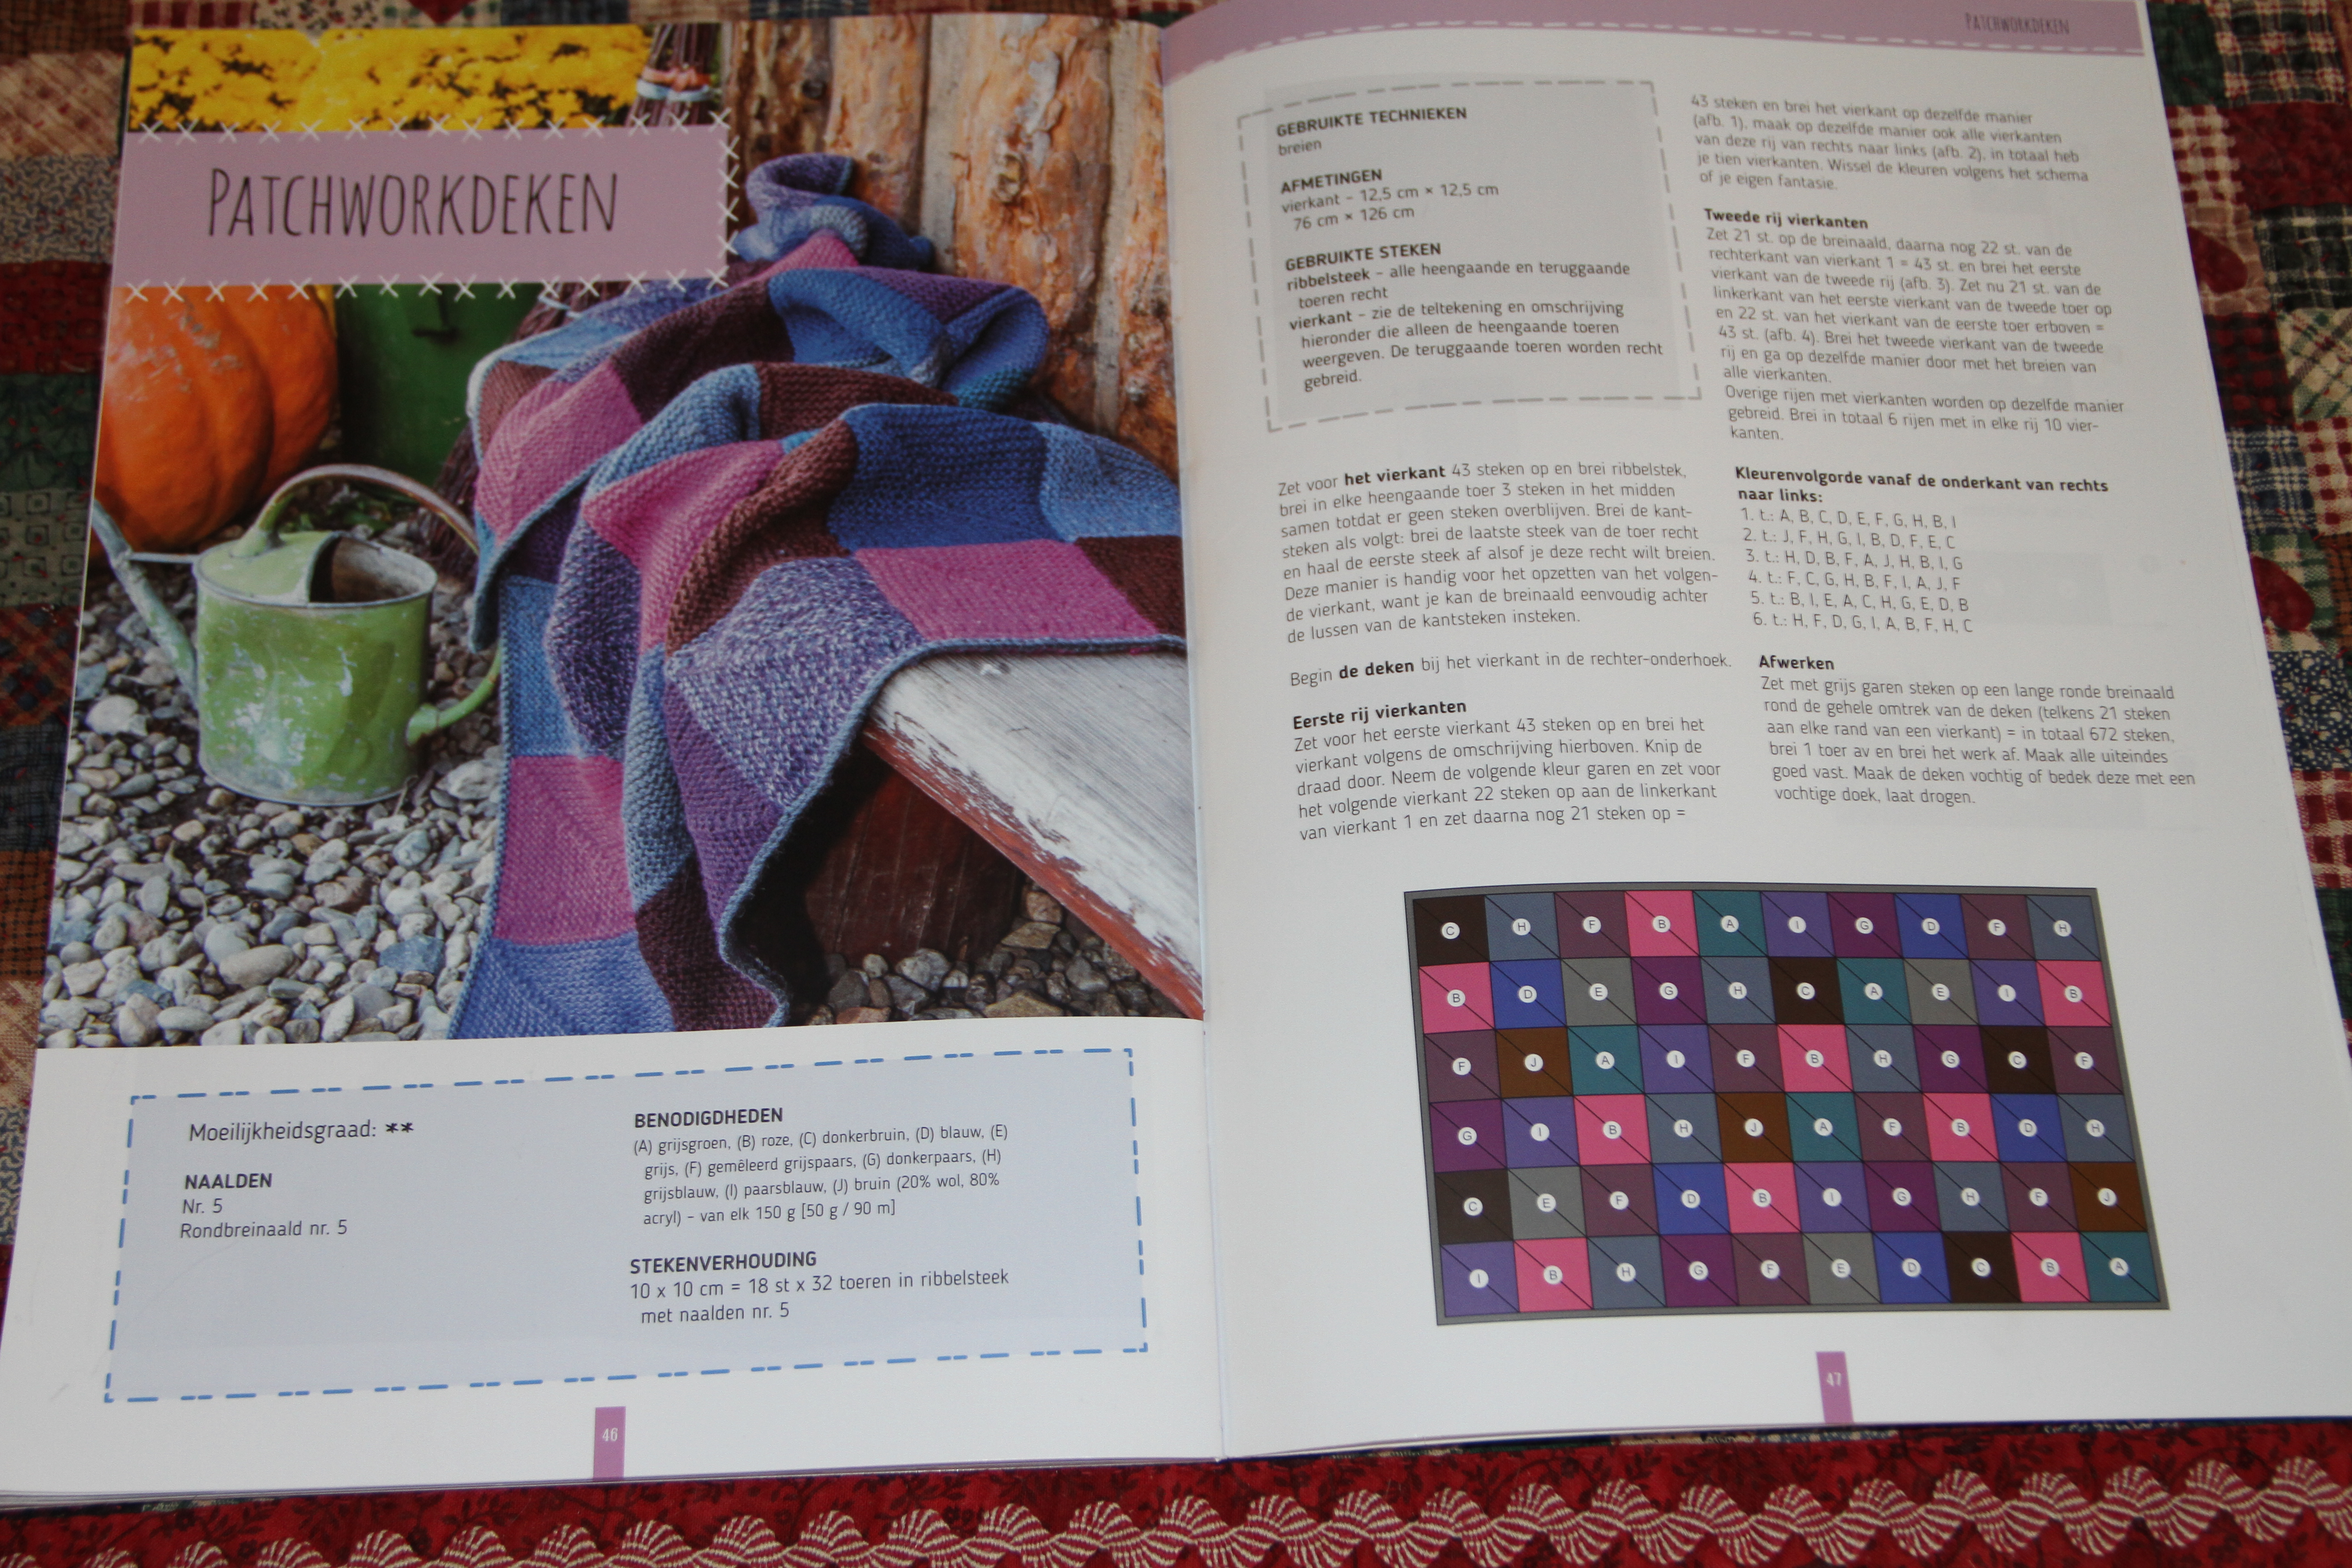 Spiksplinternieuw Brei-quilt | Binnenstebuitenboel WK-75